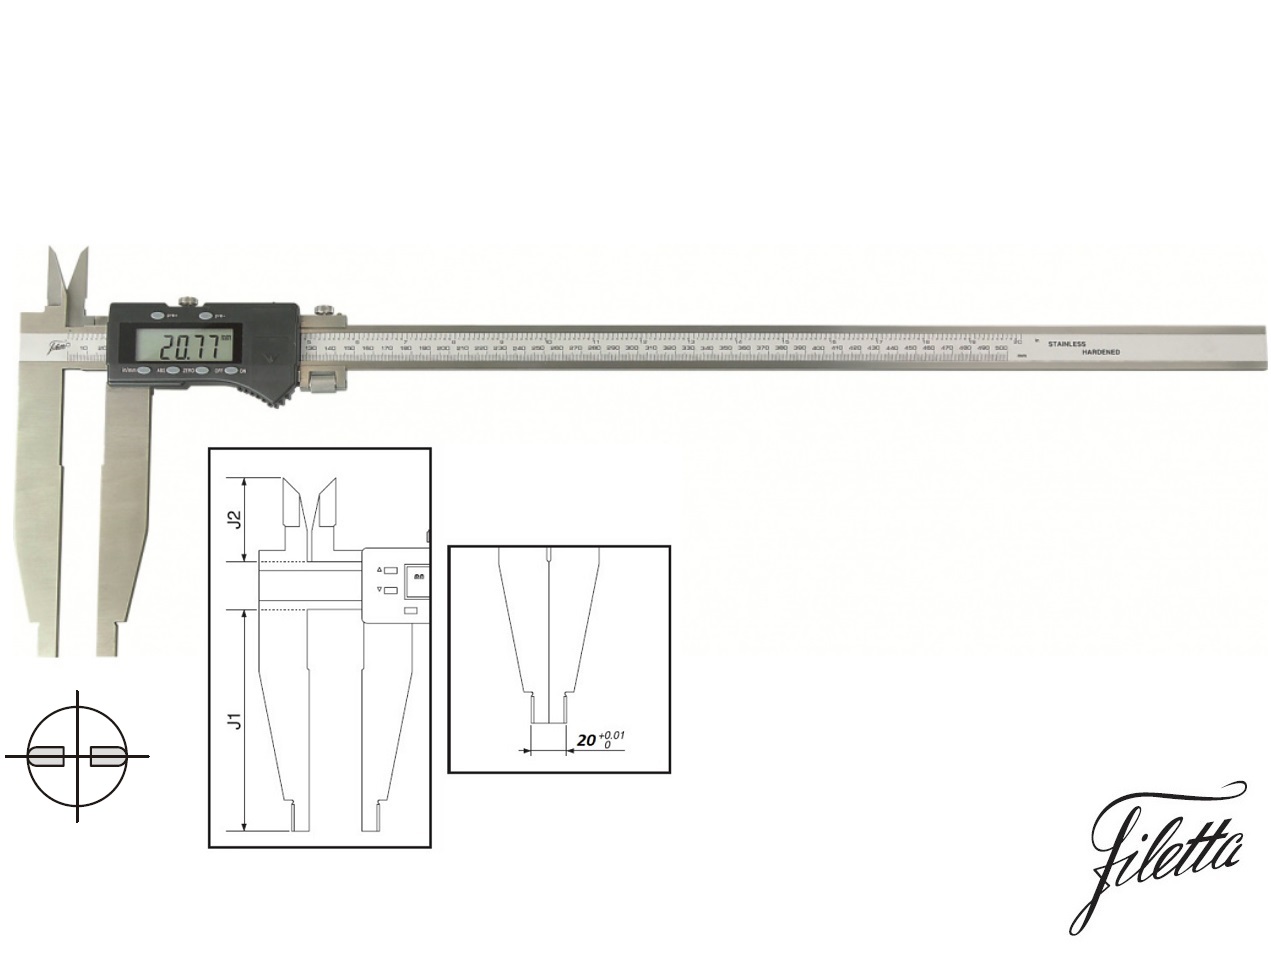 Digitální posuvné měřítko Filetta 0-600/150 mm s měřicími nožíky pro vnitřní měření